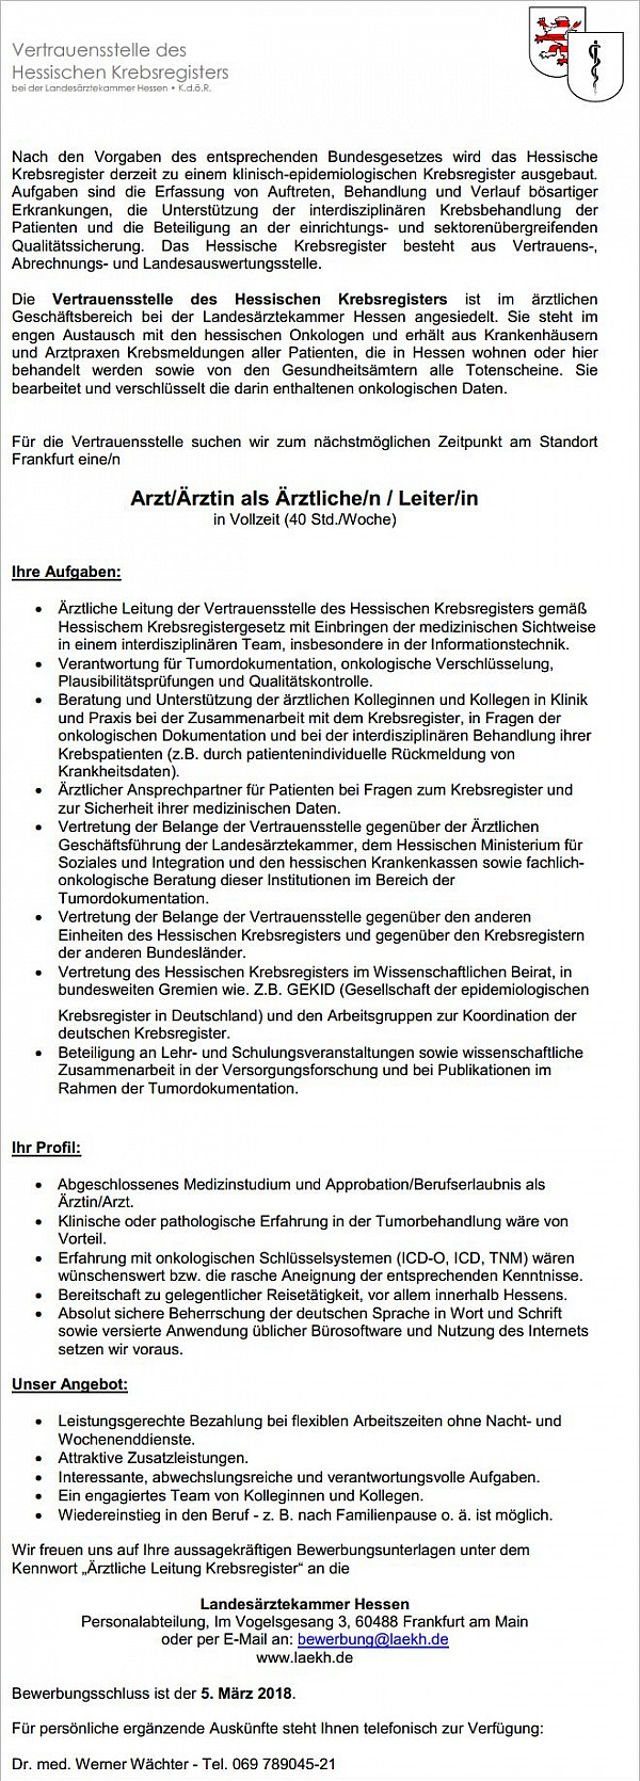 Vertrauensstelle des Hessischen Krebsregisters bei der Landesärztekammer Hessen, Frankfurt a.M.: Arzt als Ärztliche Leitung (m/w)